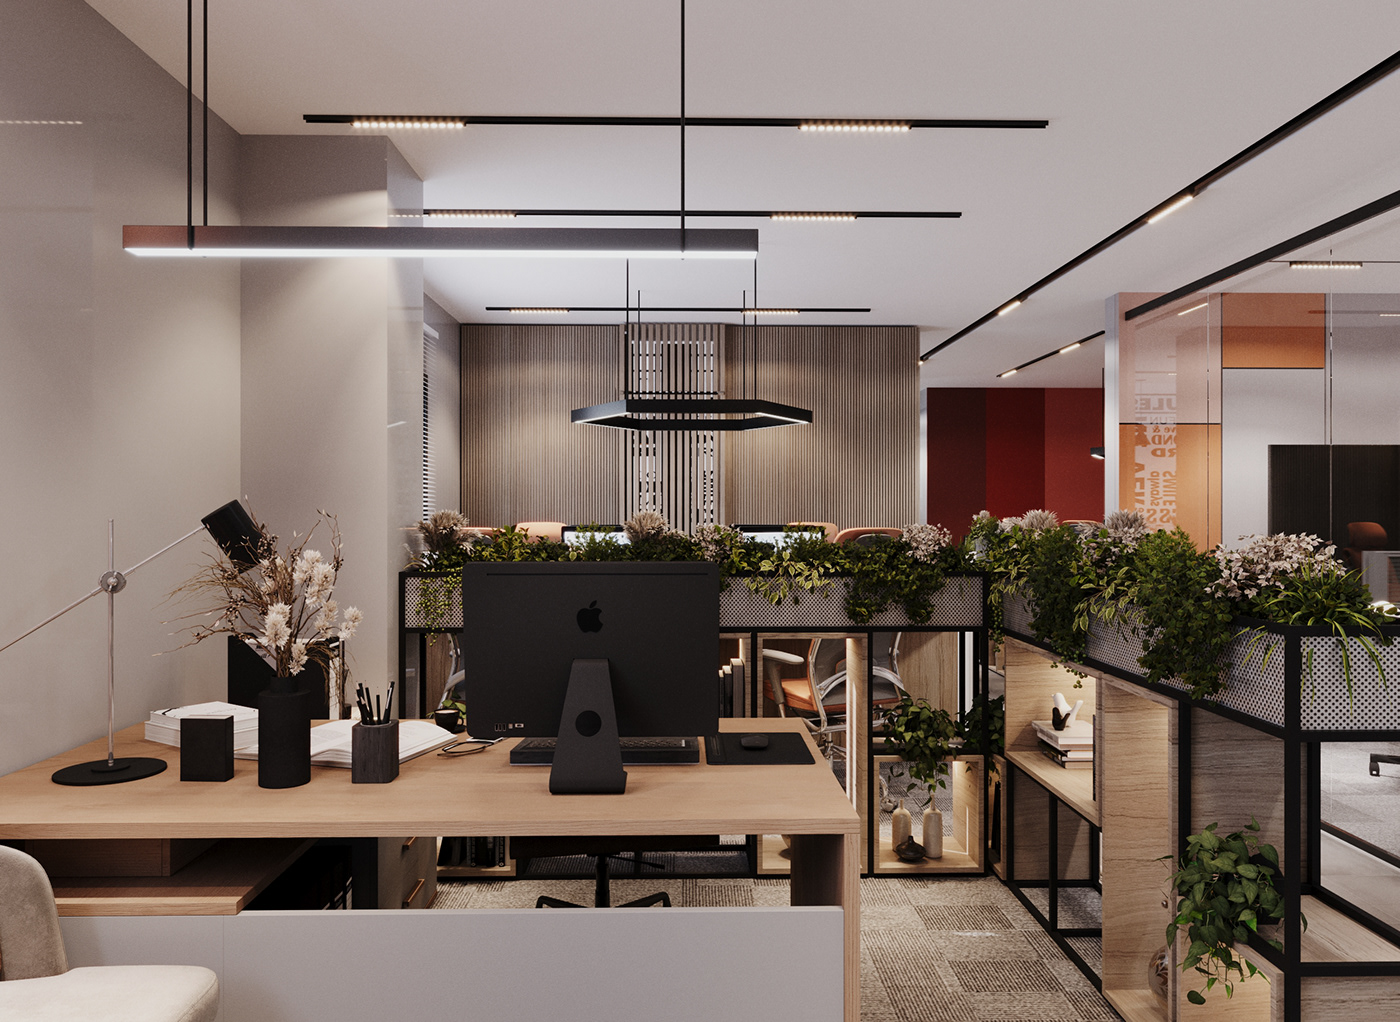 company Office Office Design office furniture design interior design  architecture visualization рендер 3ds max